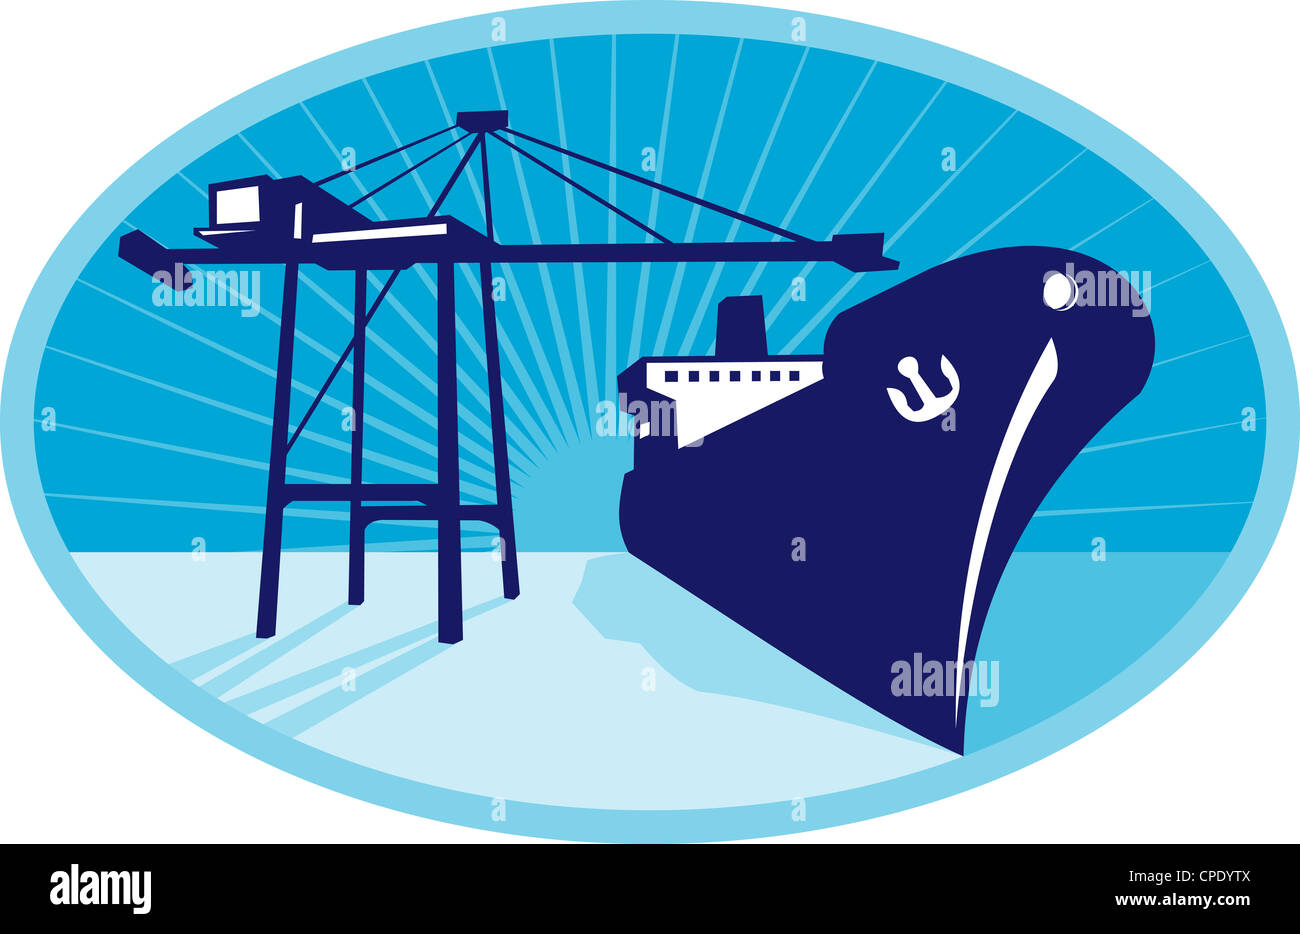 Illustrazione di un contenitore di gru a braccio il carico di una nave barca peschereccio nel Dock impostata all'interno di ellisse fatto in stile retrò. Foto Stock